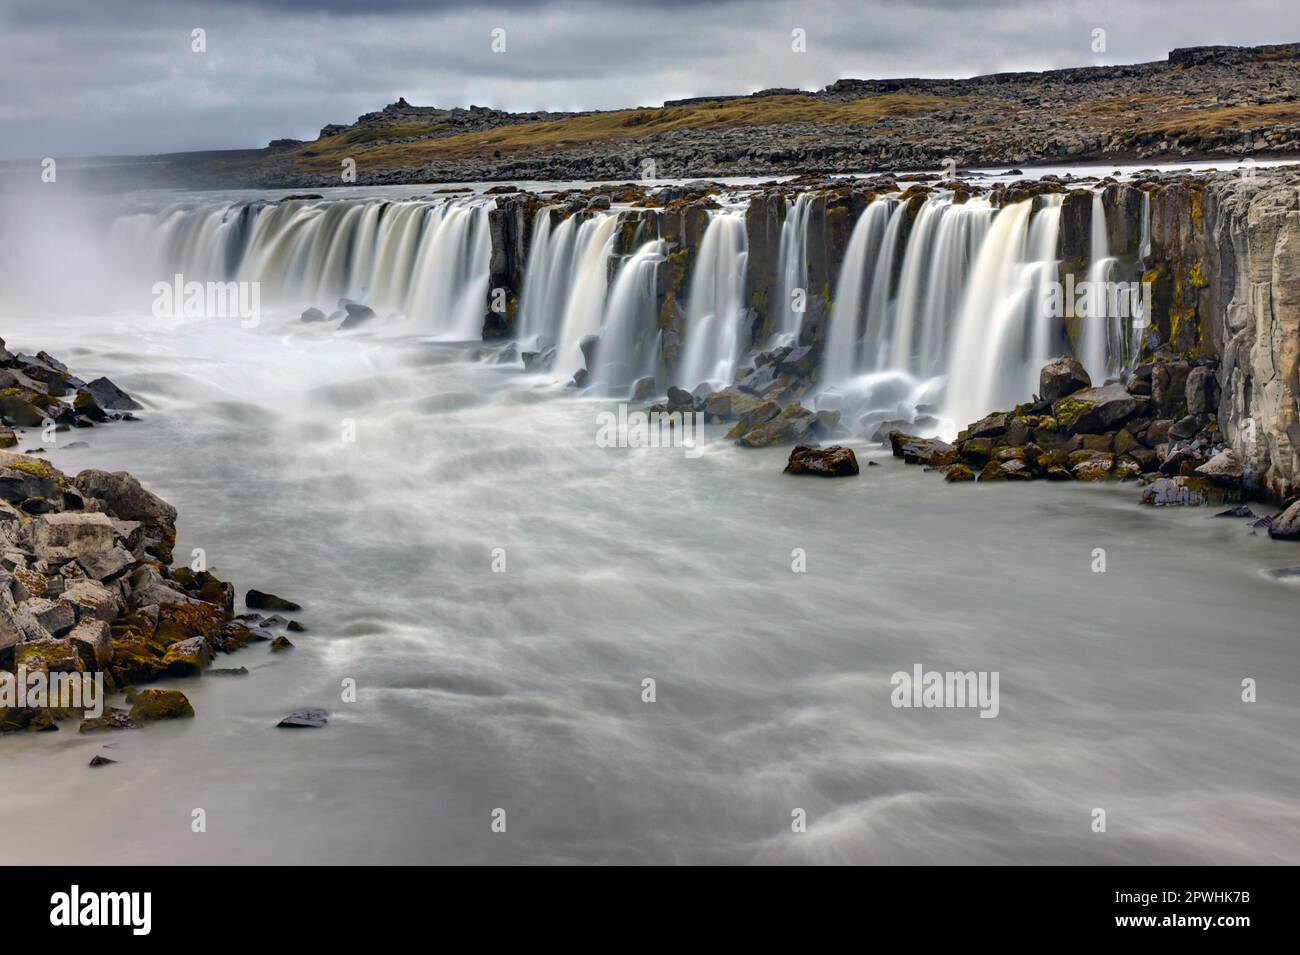 La chute d'eau de Selfoss en Islande par un jour de pluie Banque D'Images